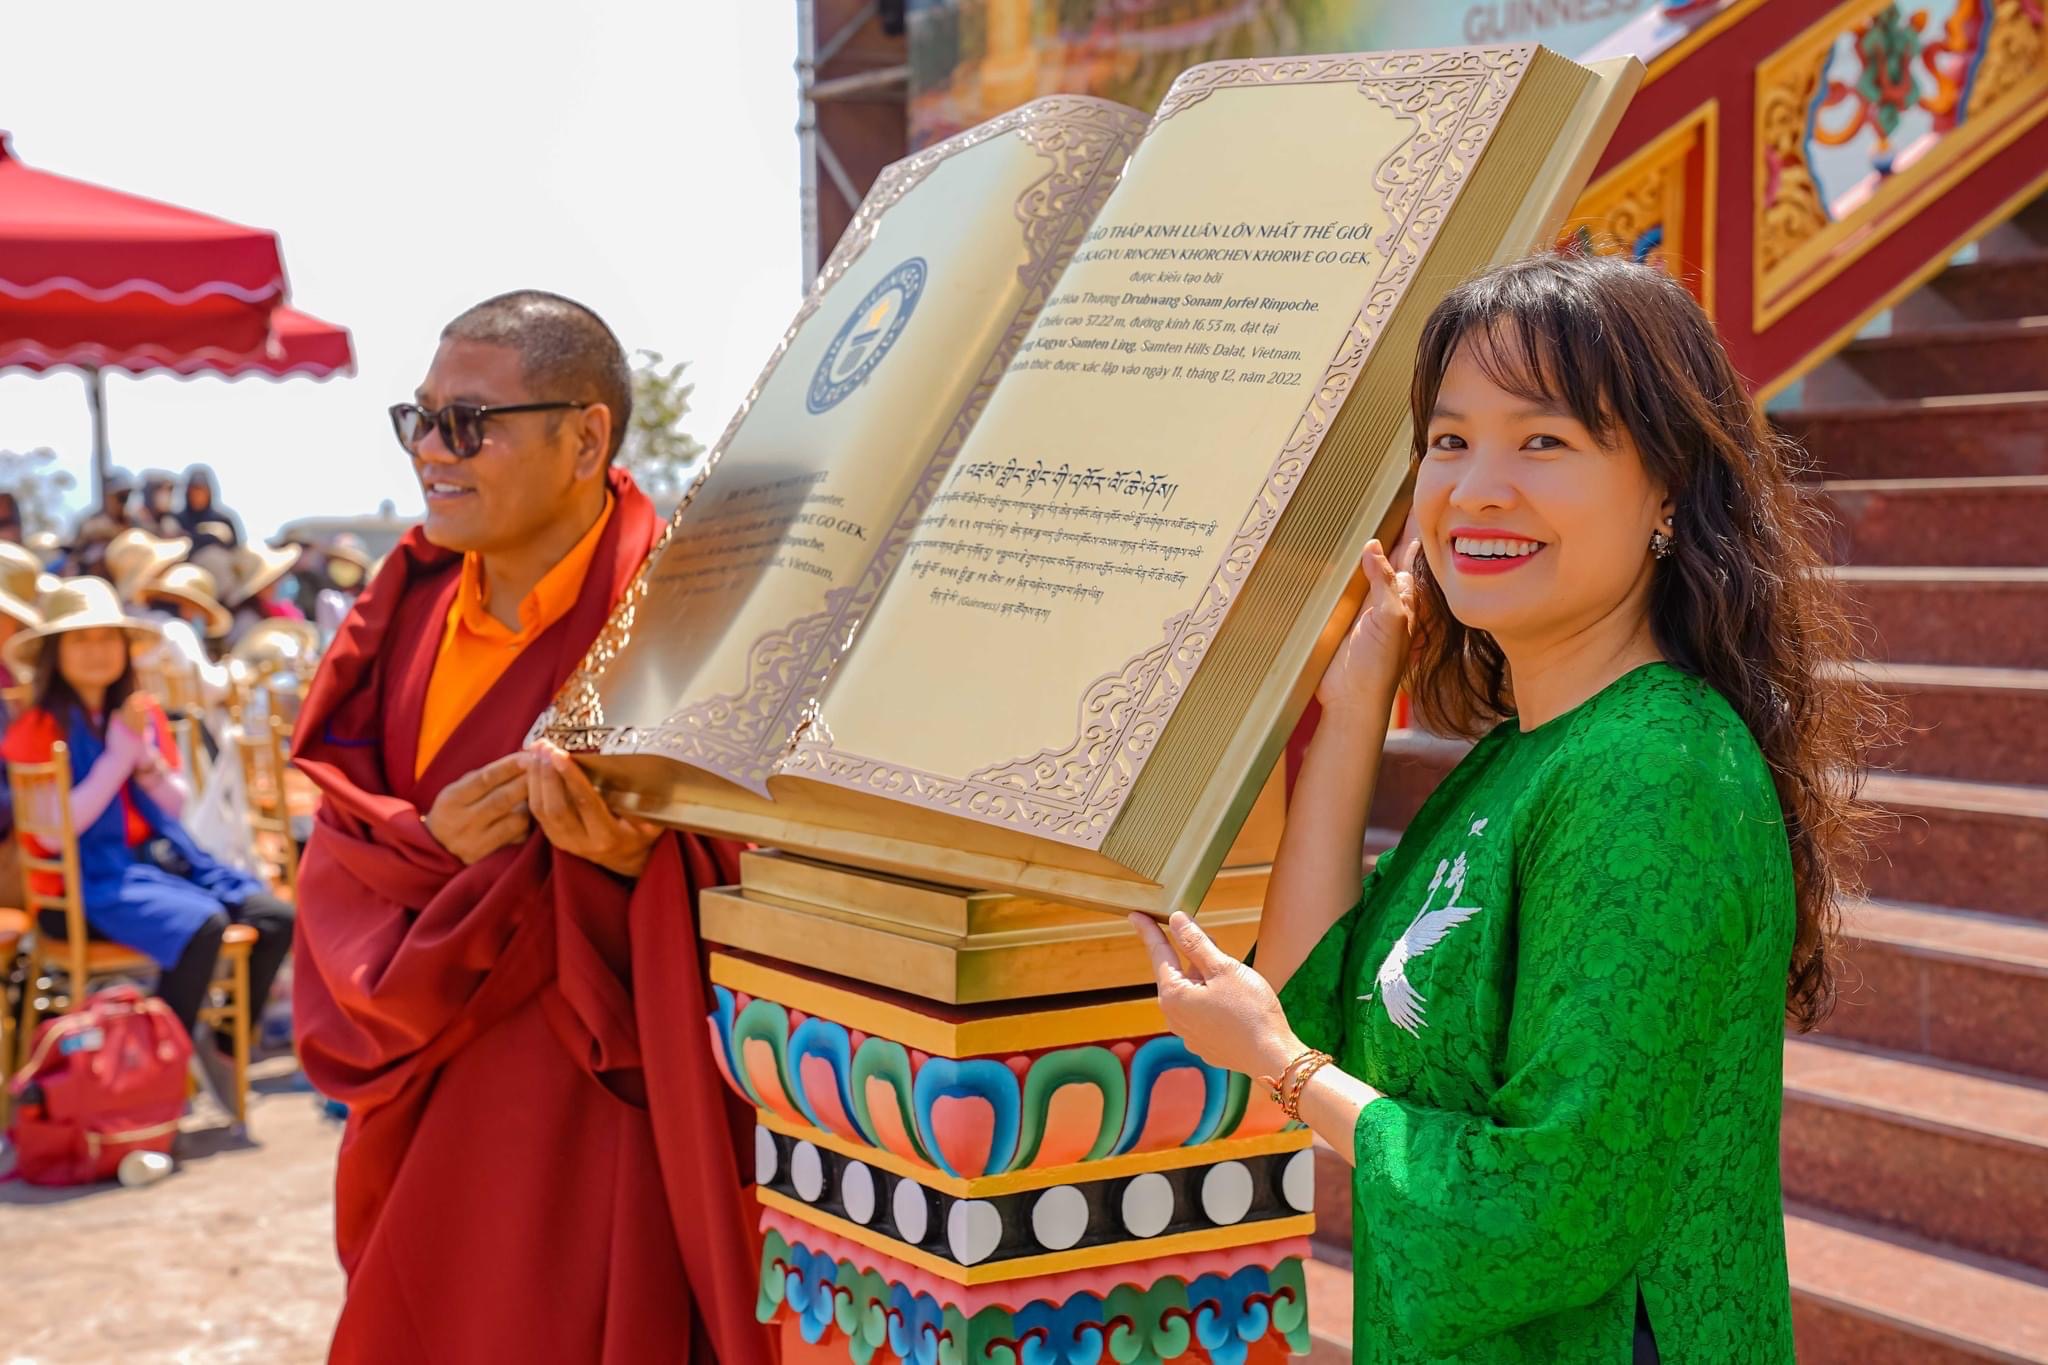 Đại Bảo tháp Kinh Luân “Drigung Kagyu Rinchen Khorchen Khorwe Go Gek”